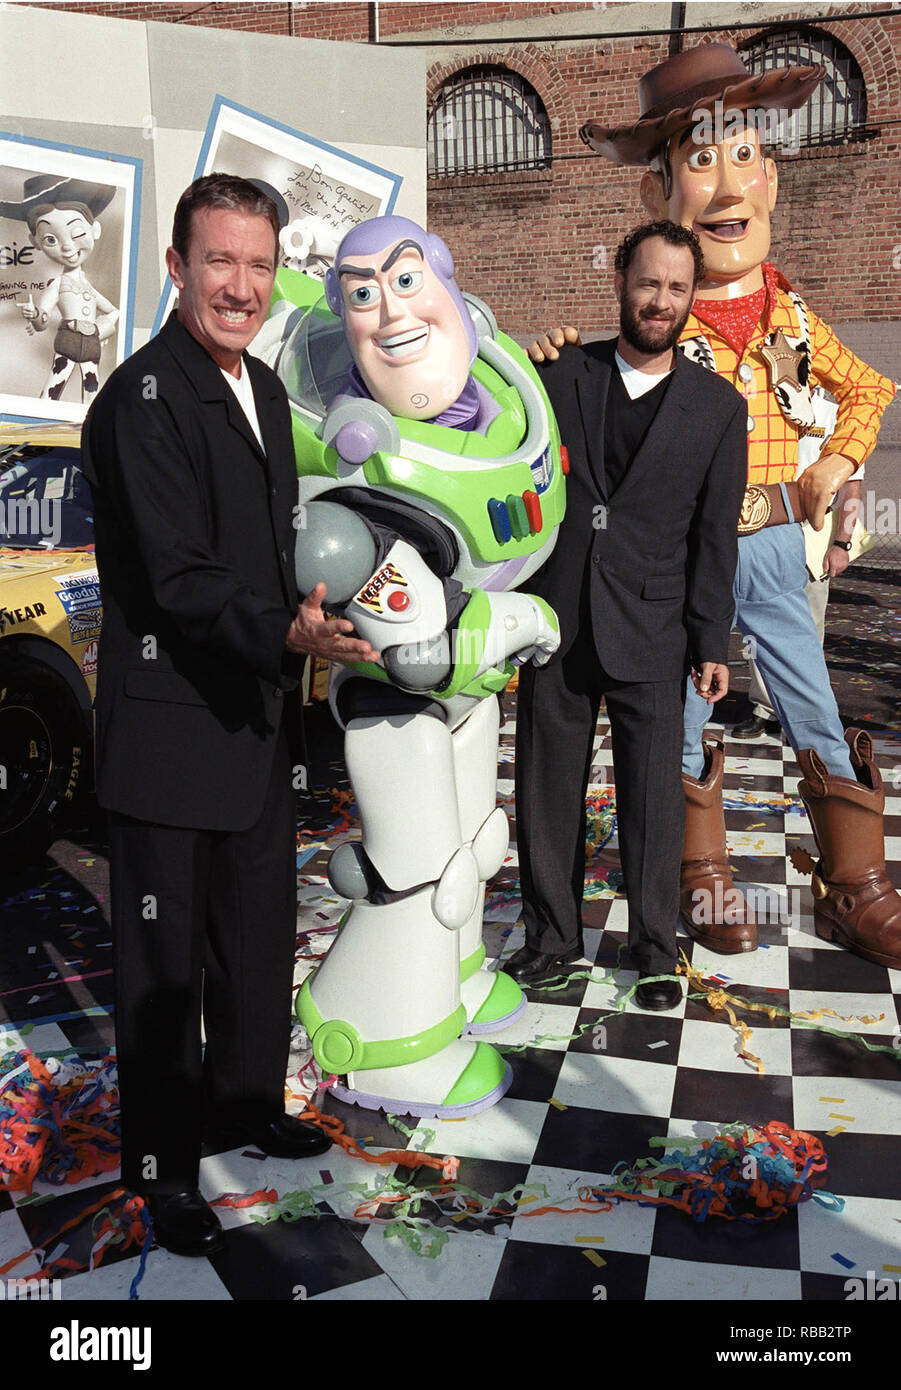 23OTT99: Attori TIM ALLEN (sinistra) e Tom Hanks con "Toy Story" caratteri "Buzz Lightyear' & 'woody' le cui voci raffigurano nelle pellicole. Essi erano a una promozione a Hollywood per svelare tre NASCAR racing cars a tema che "Toy Story 2' che apre il mese prossimo. © RTSmith / MediaPunch Foto Stock